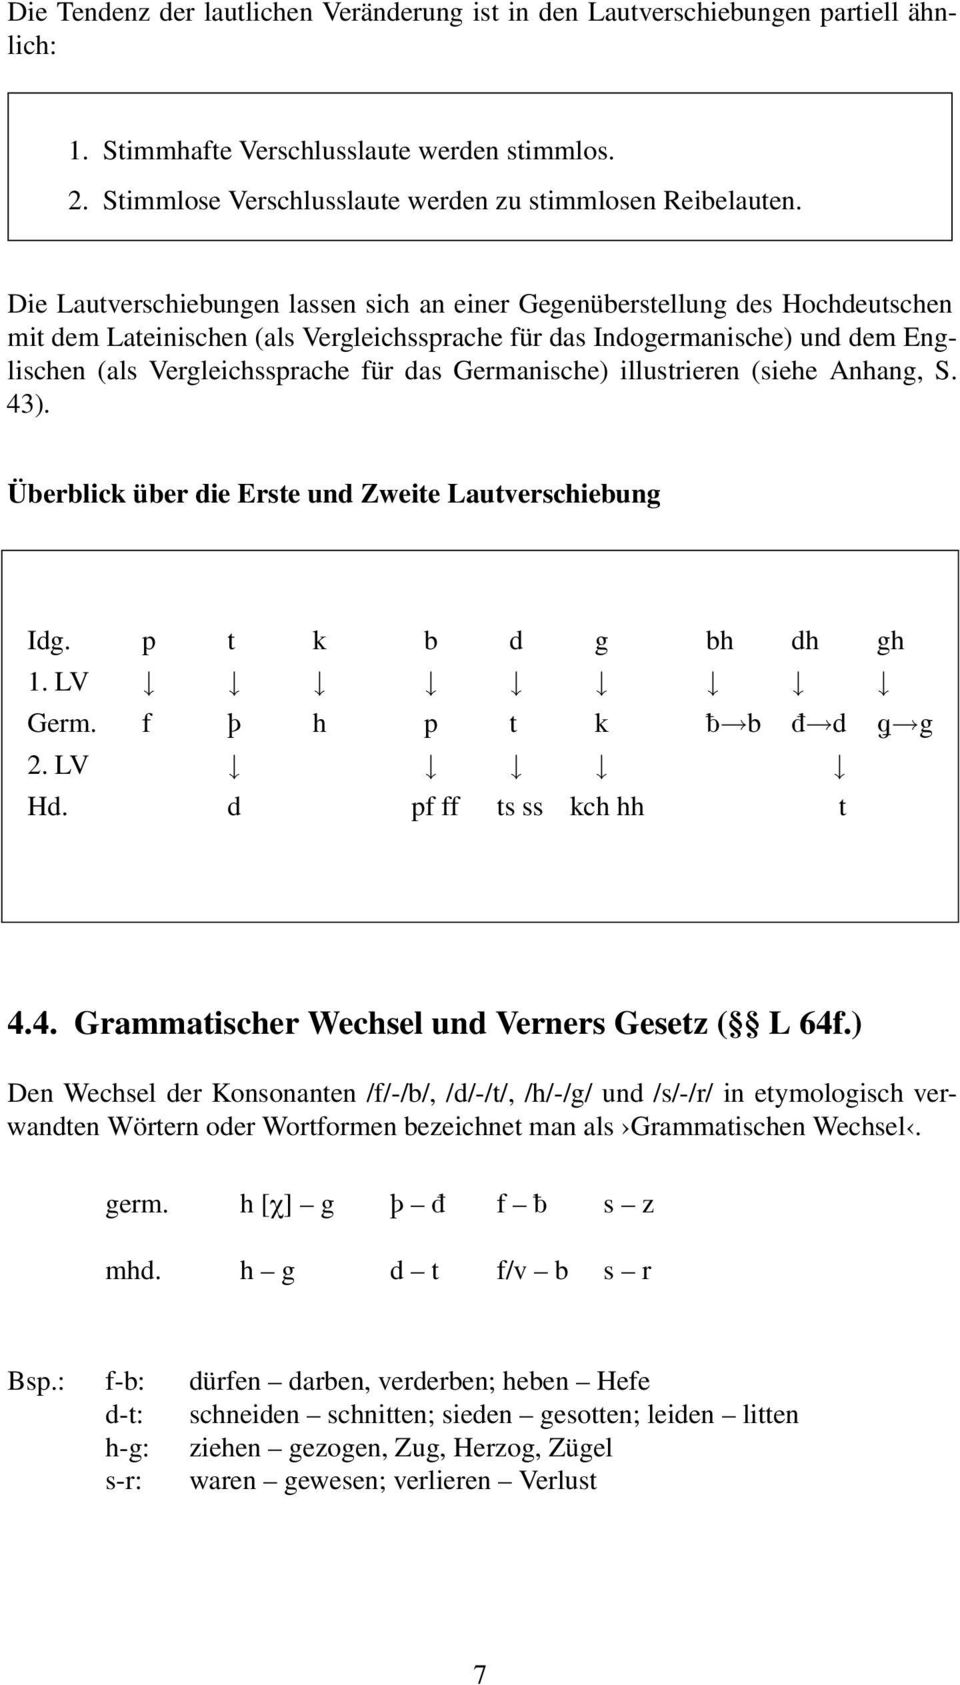 Mittelhochdeutsche Kurzgrammatik Pdf Kostenfreier Download